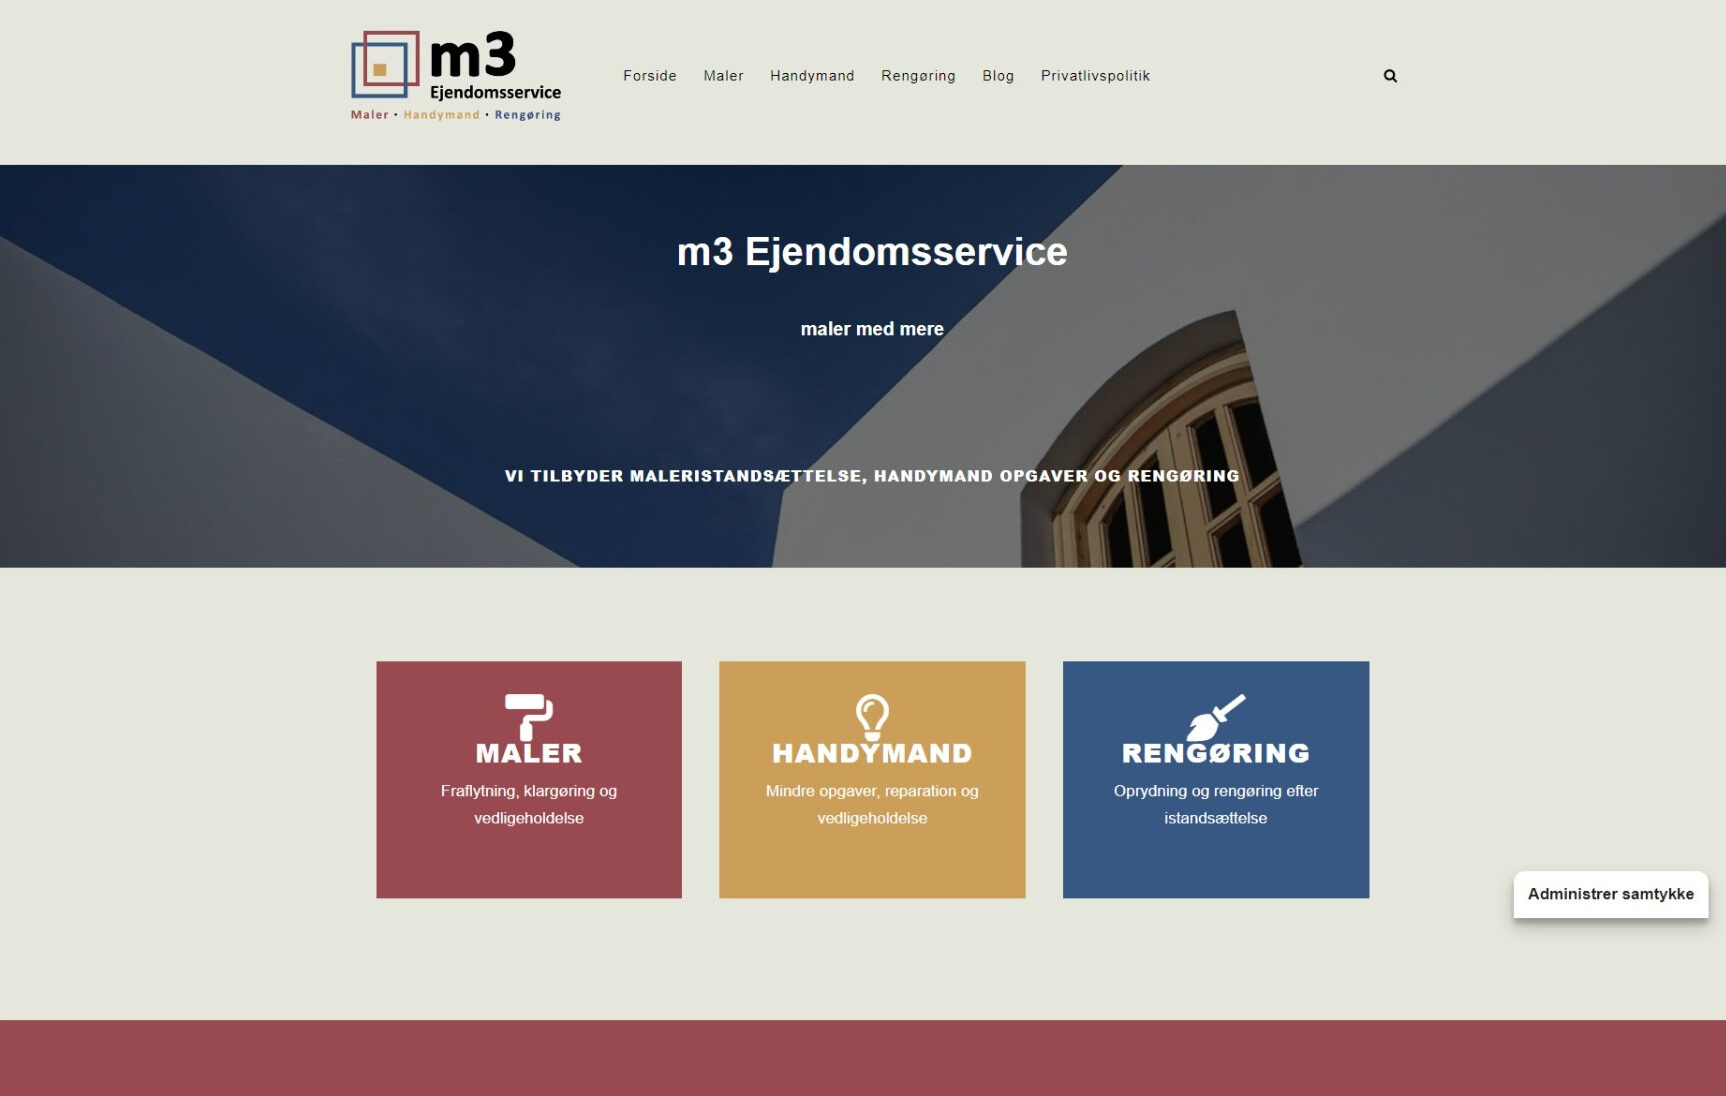 m3 ejendomsservice website